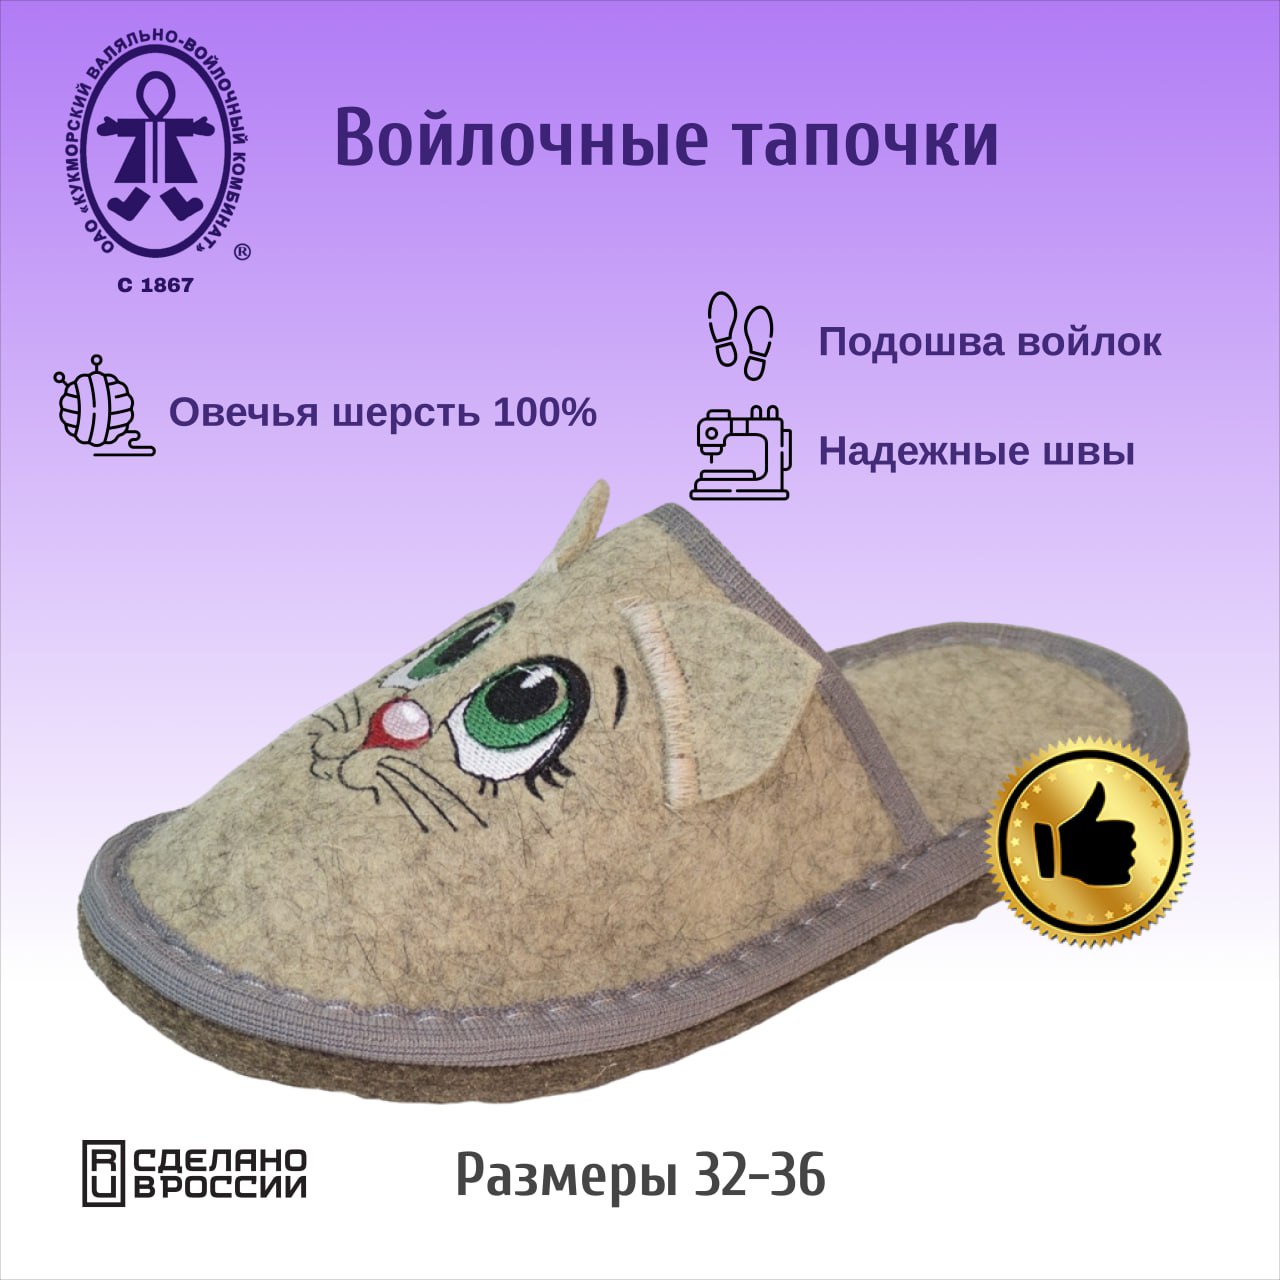 Тапочки Кукморские валенки ДТ-02ср серый, 32